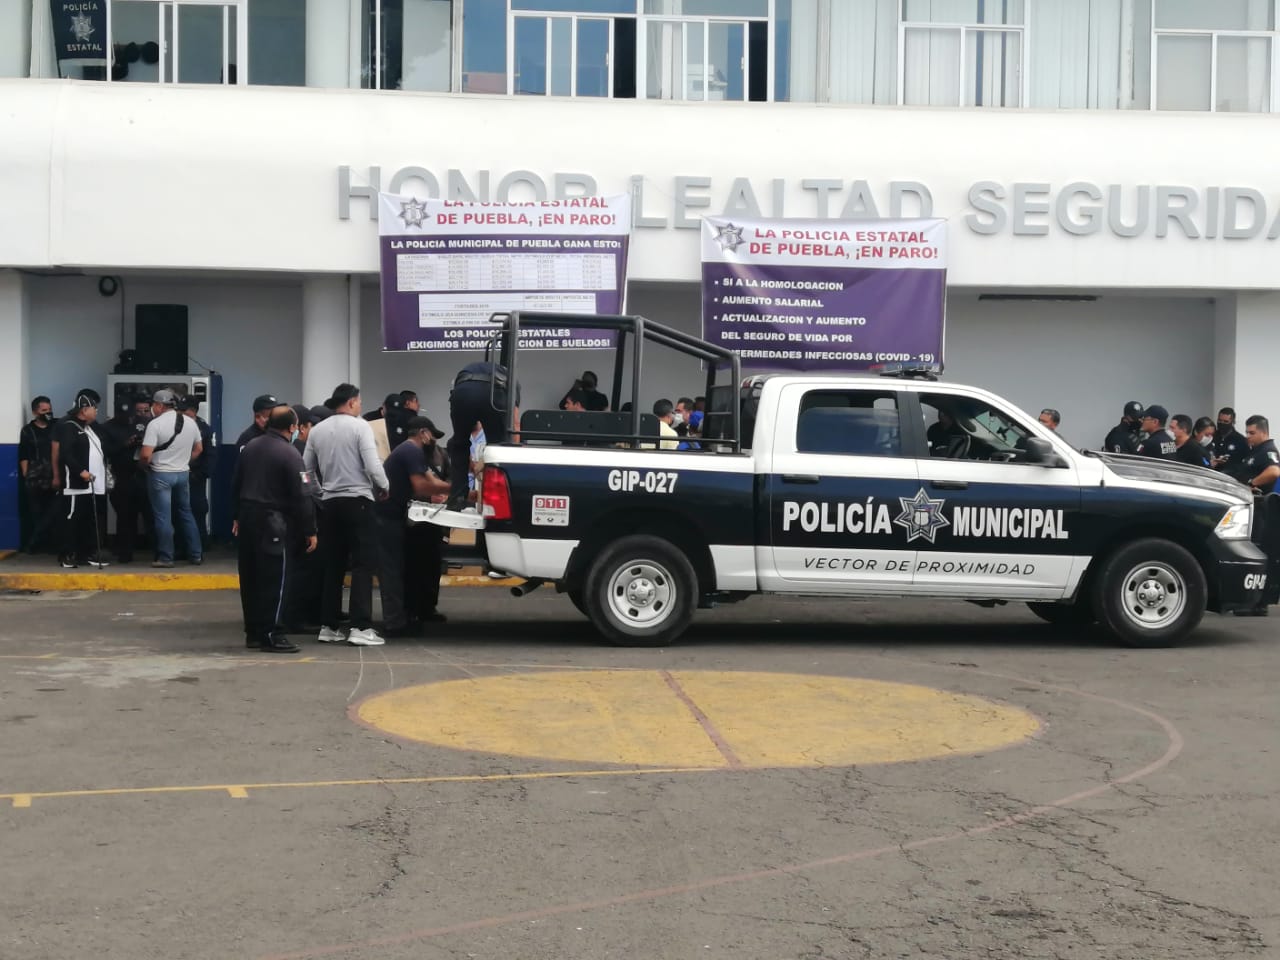 Tiempos políticos violentos azotan a Puebla… sálvese el que pueda